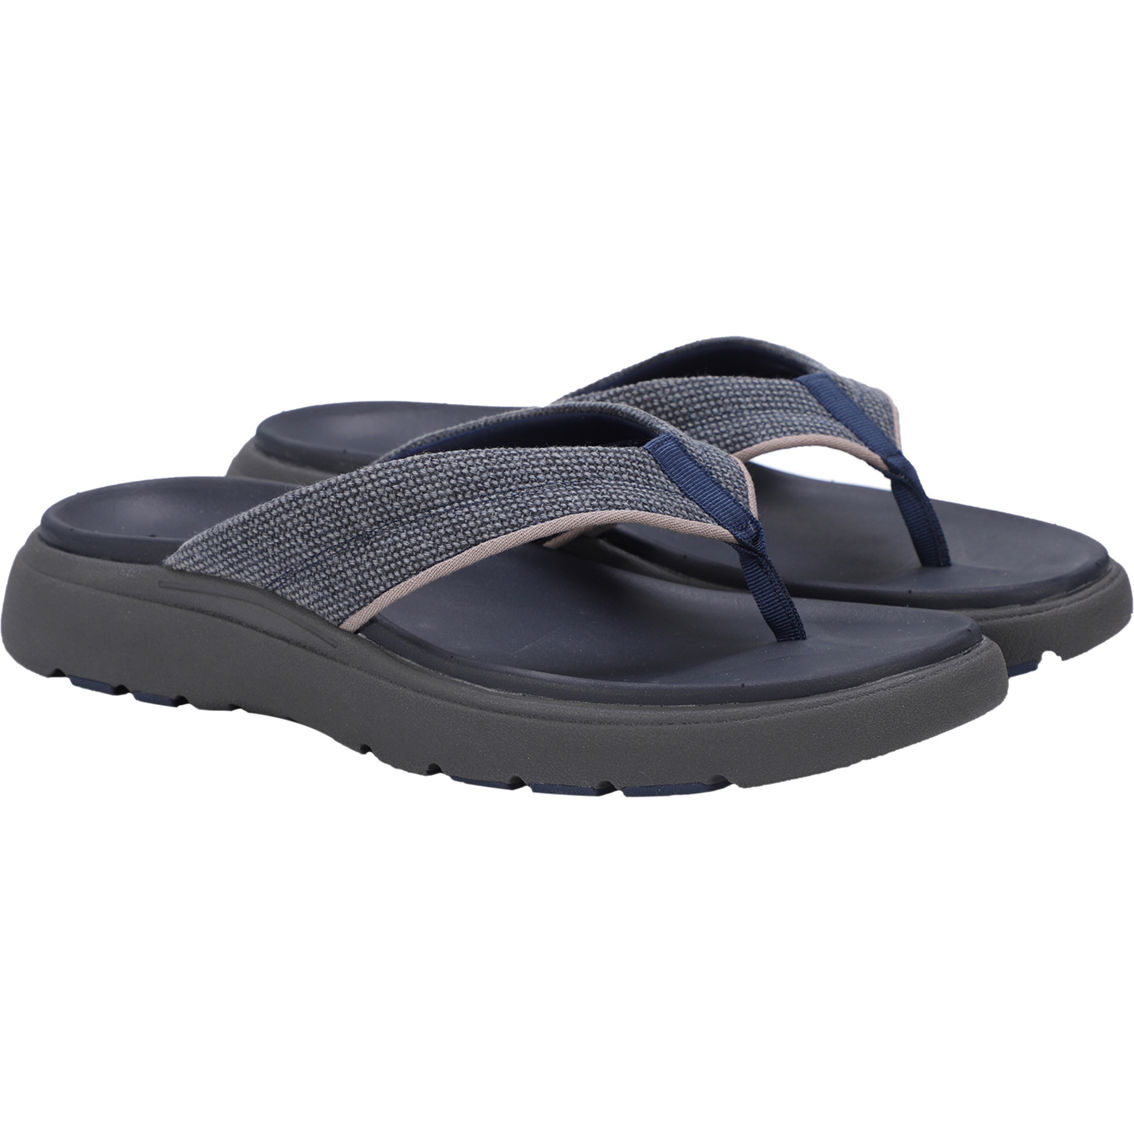 Lamo Lyle Comfort Flip Flop Sandals - Image 9 of 9